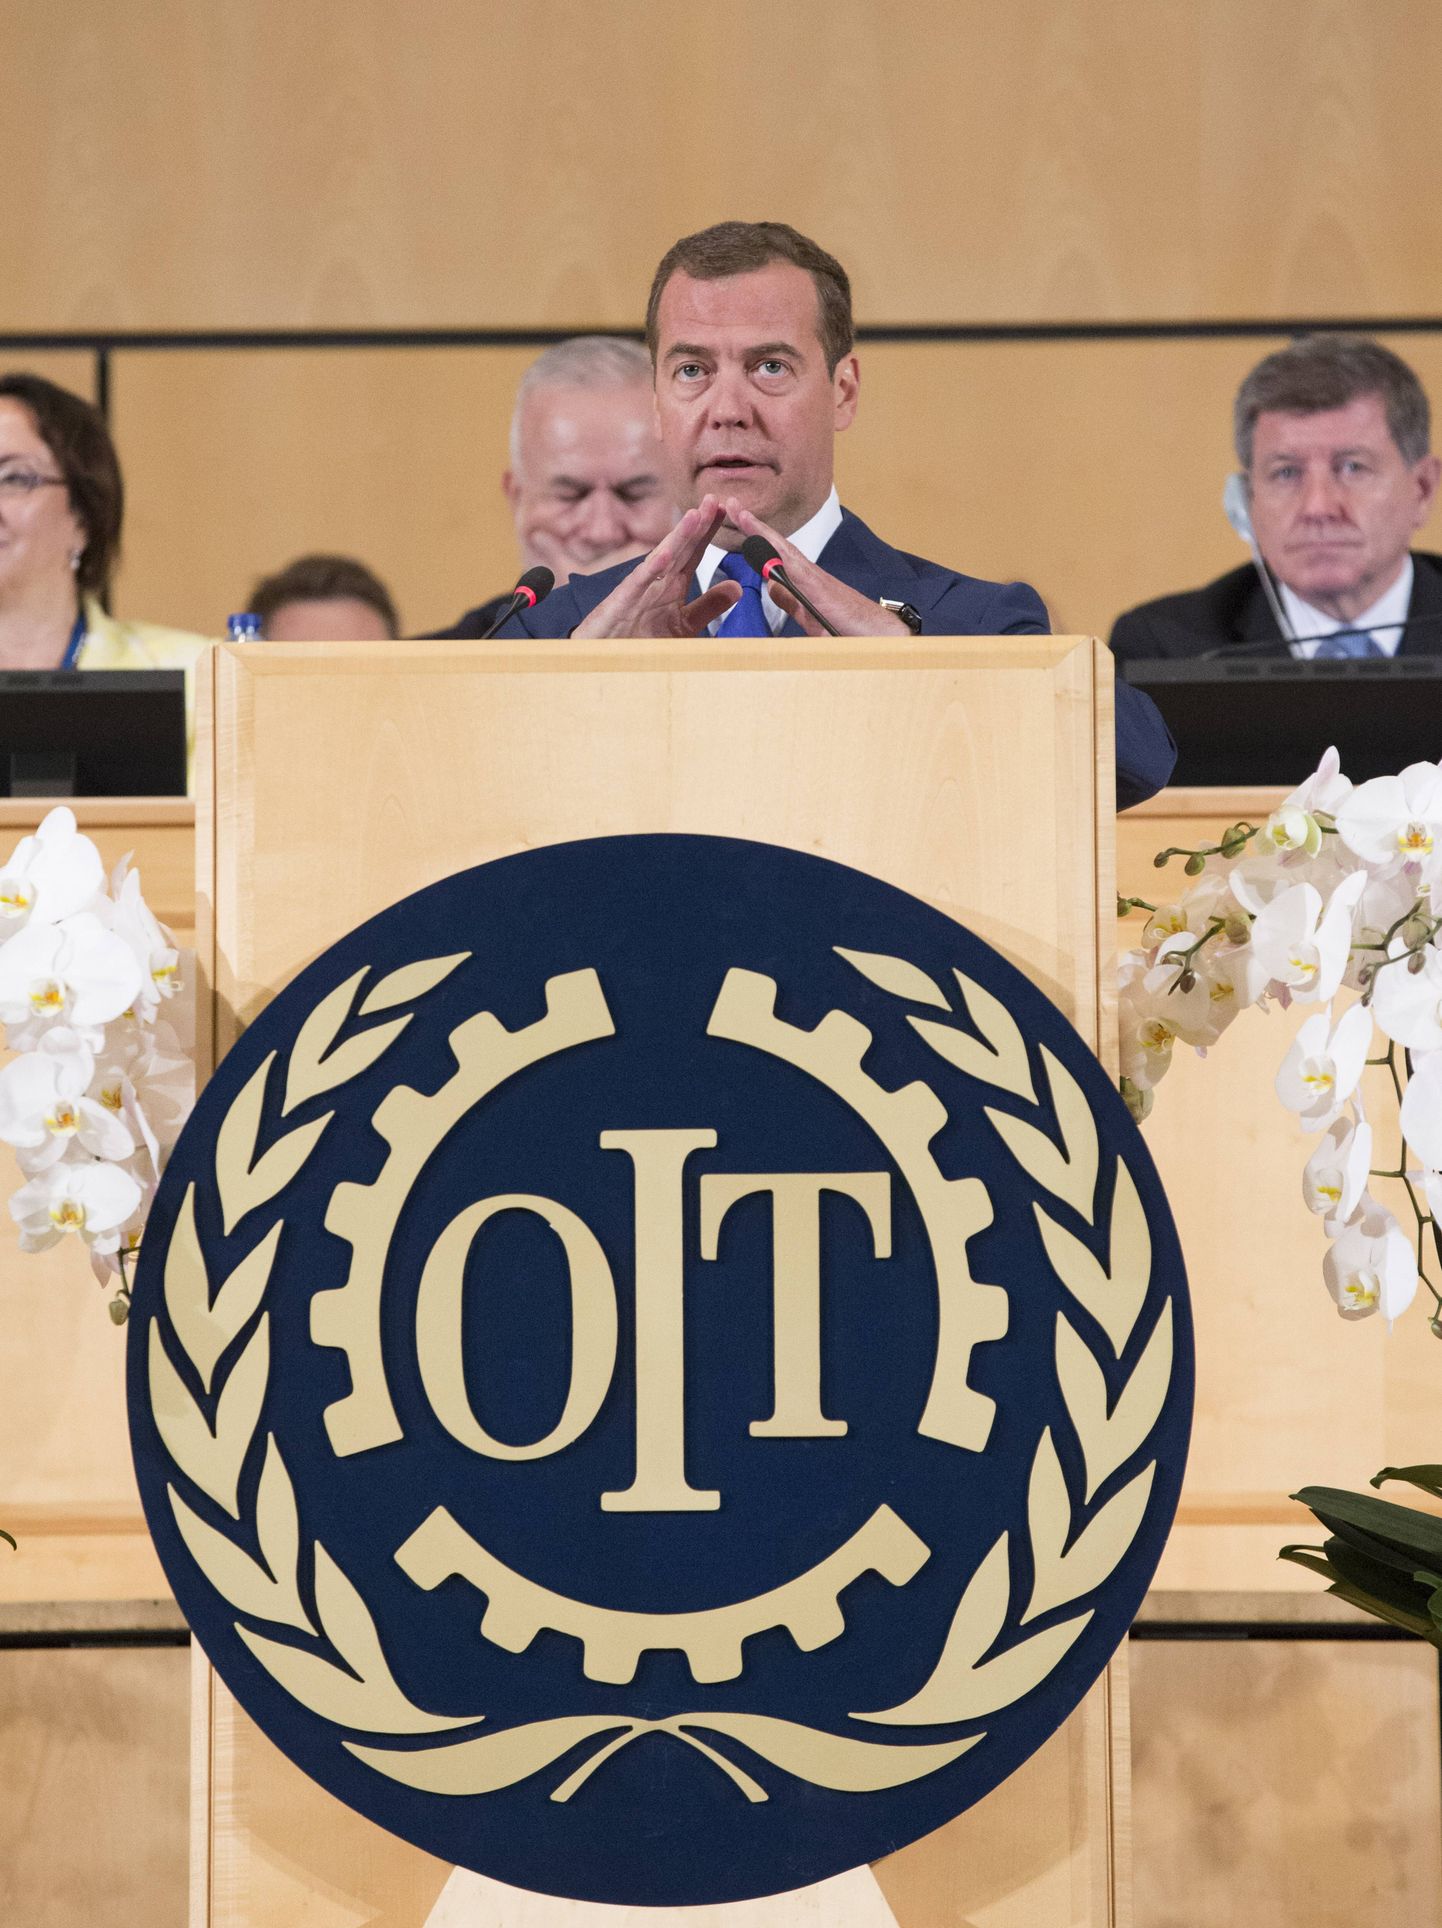 Venemaa peaminister Dimitri Medvedev pidamas kõnet Rahvusvahelisel Töökonverentsil.